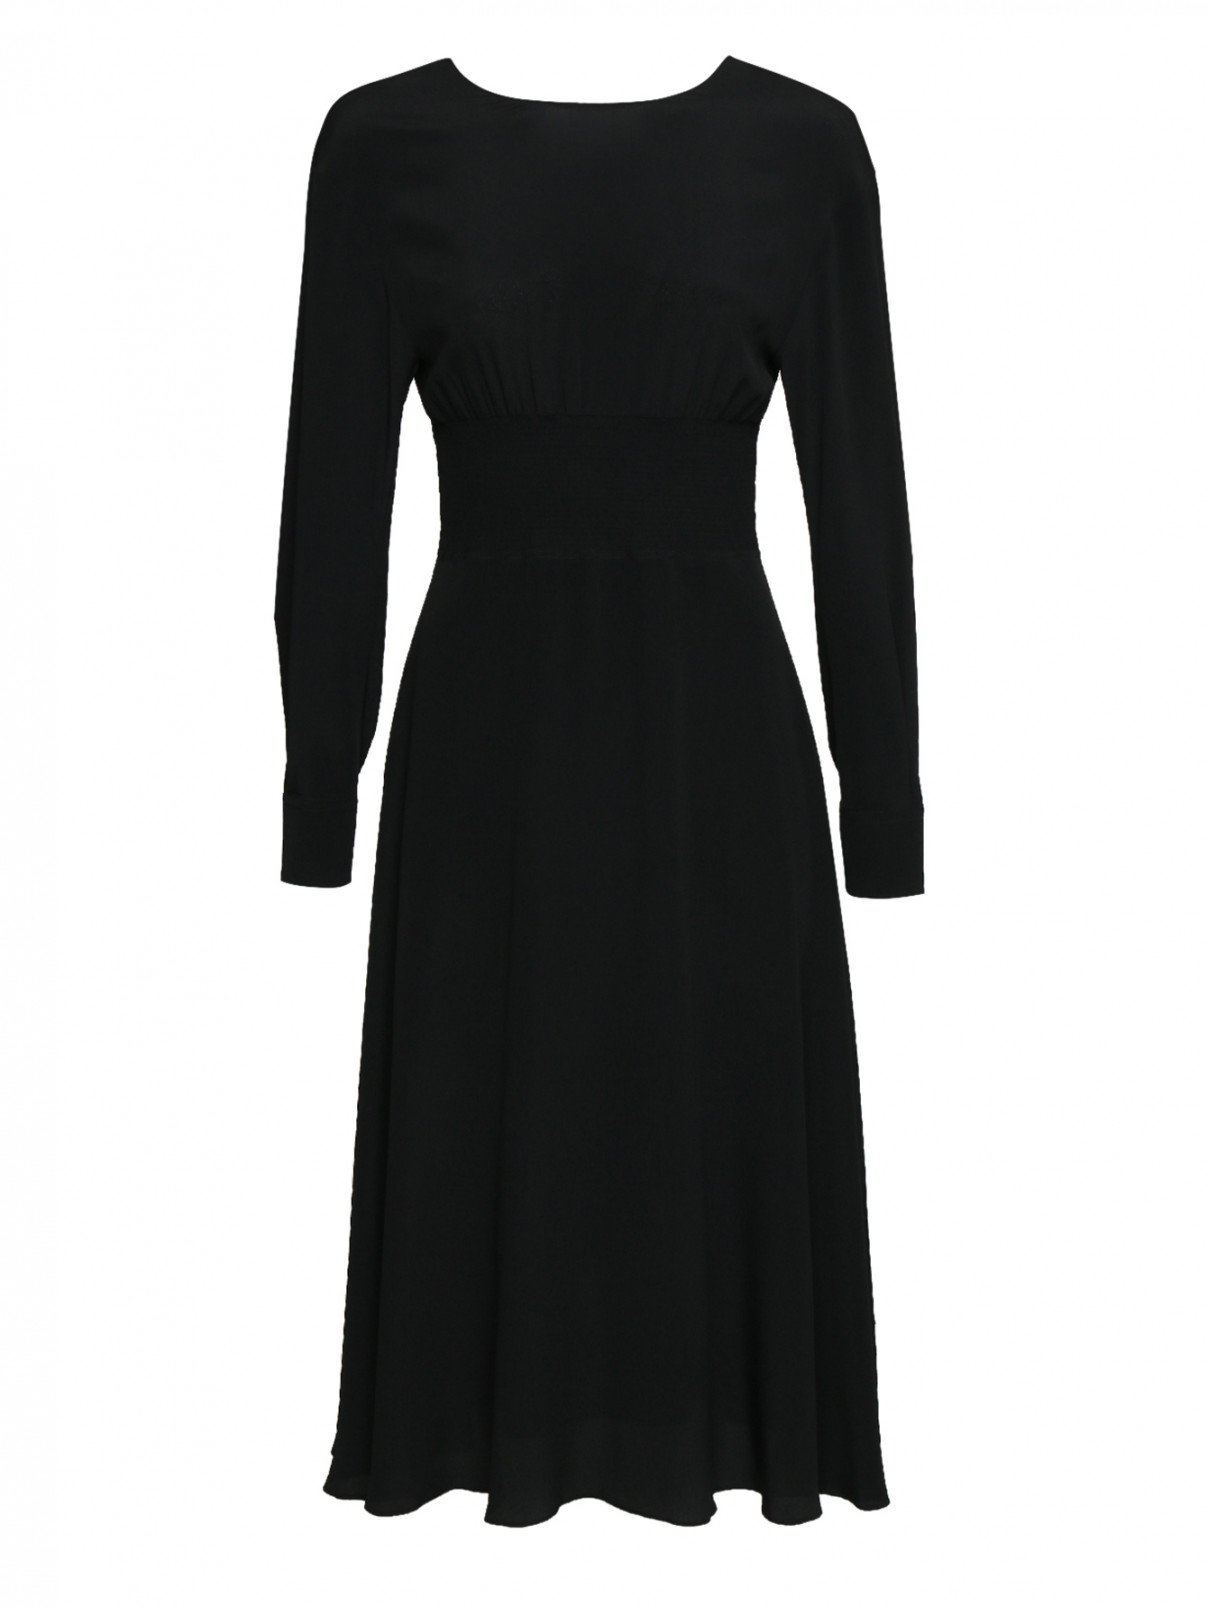 Платье-миди с резинкой на талии и молнией по спинке Sportmax  –  Общий вид  – Цвет:  Черный